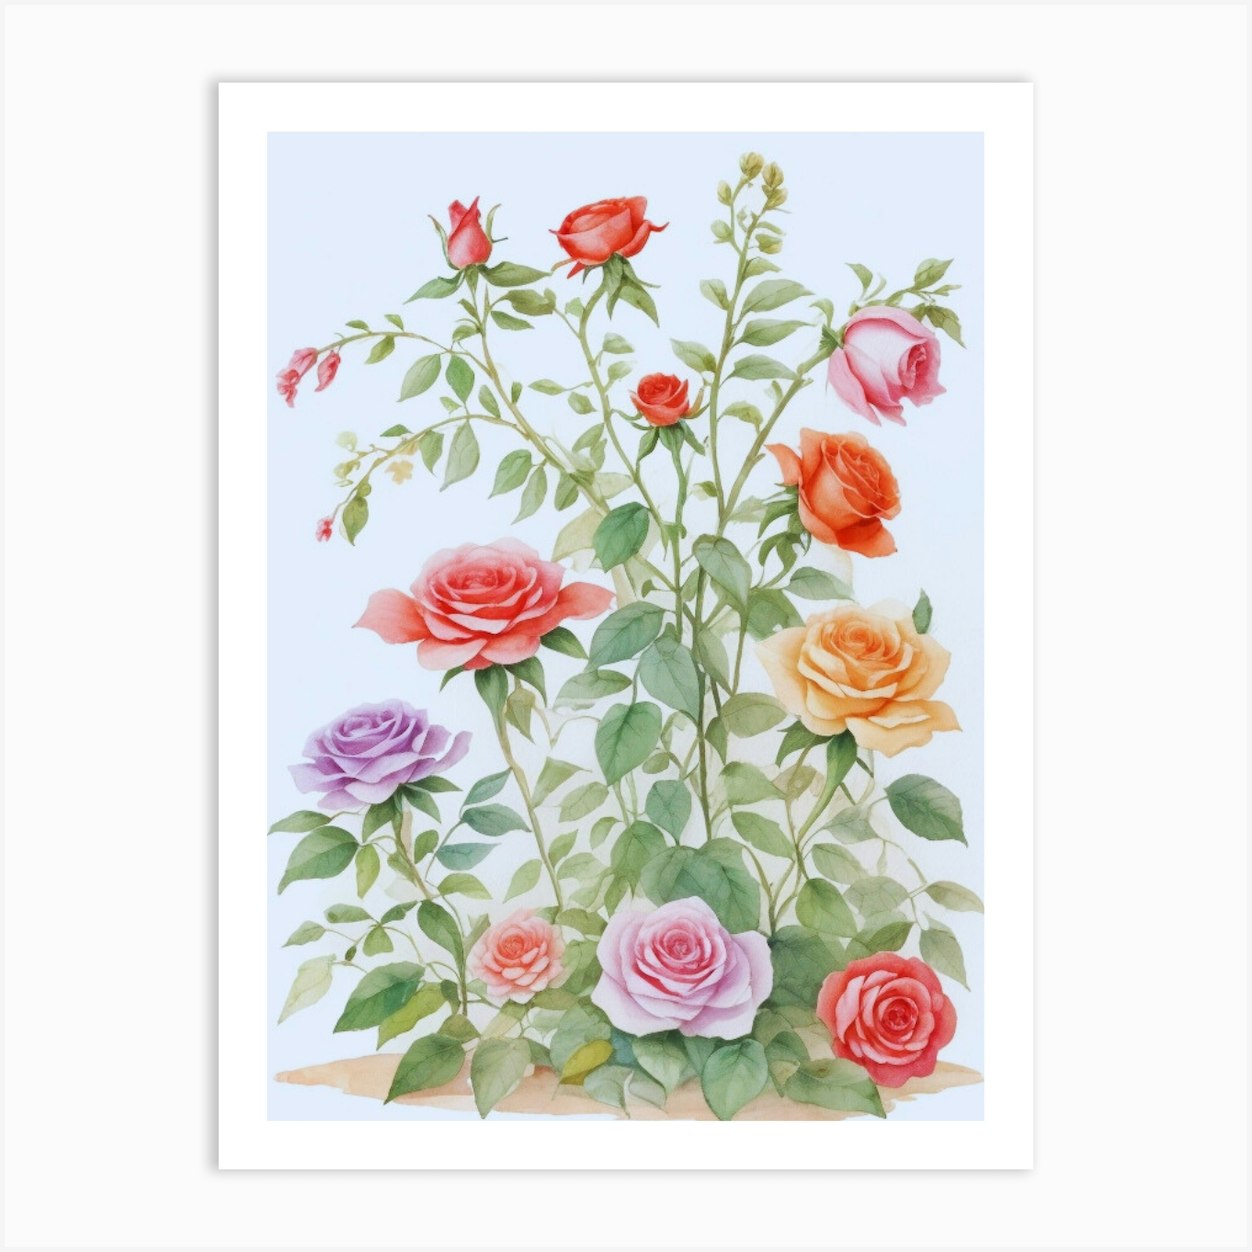 Watercolor Beautiful Roses Art Print by Artistcom - Fy